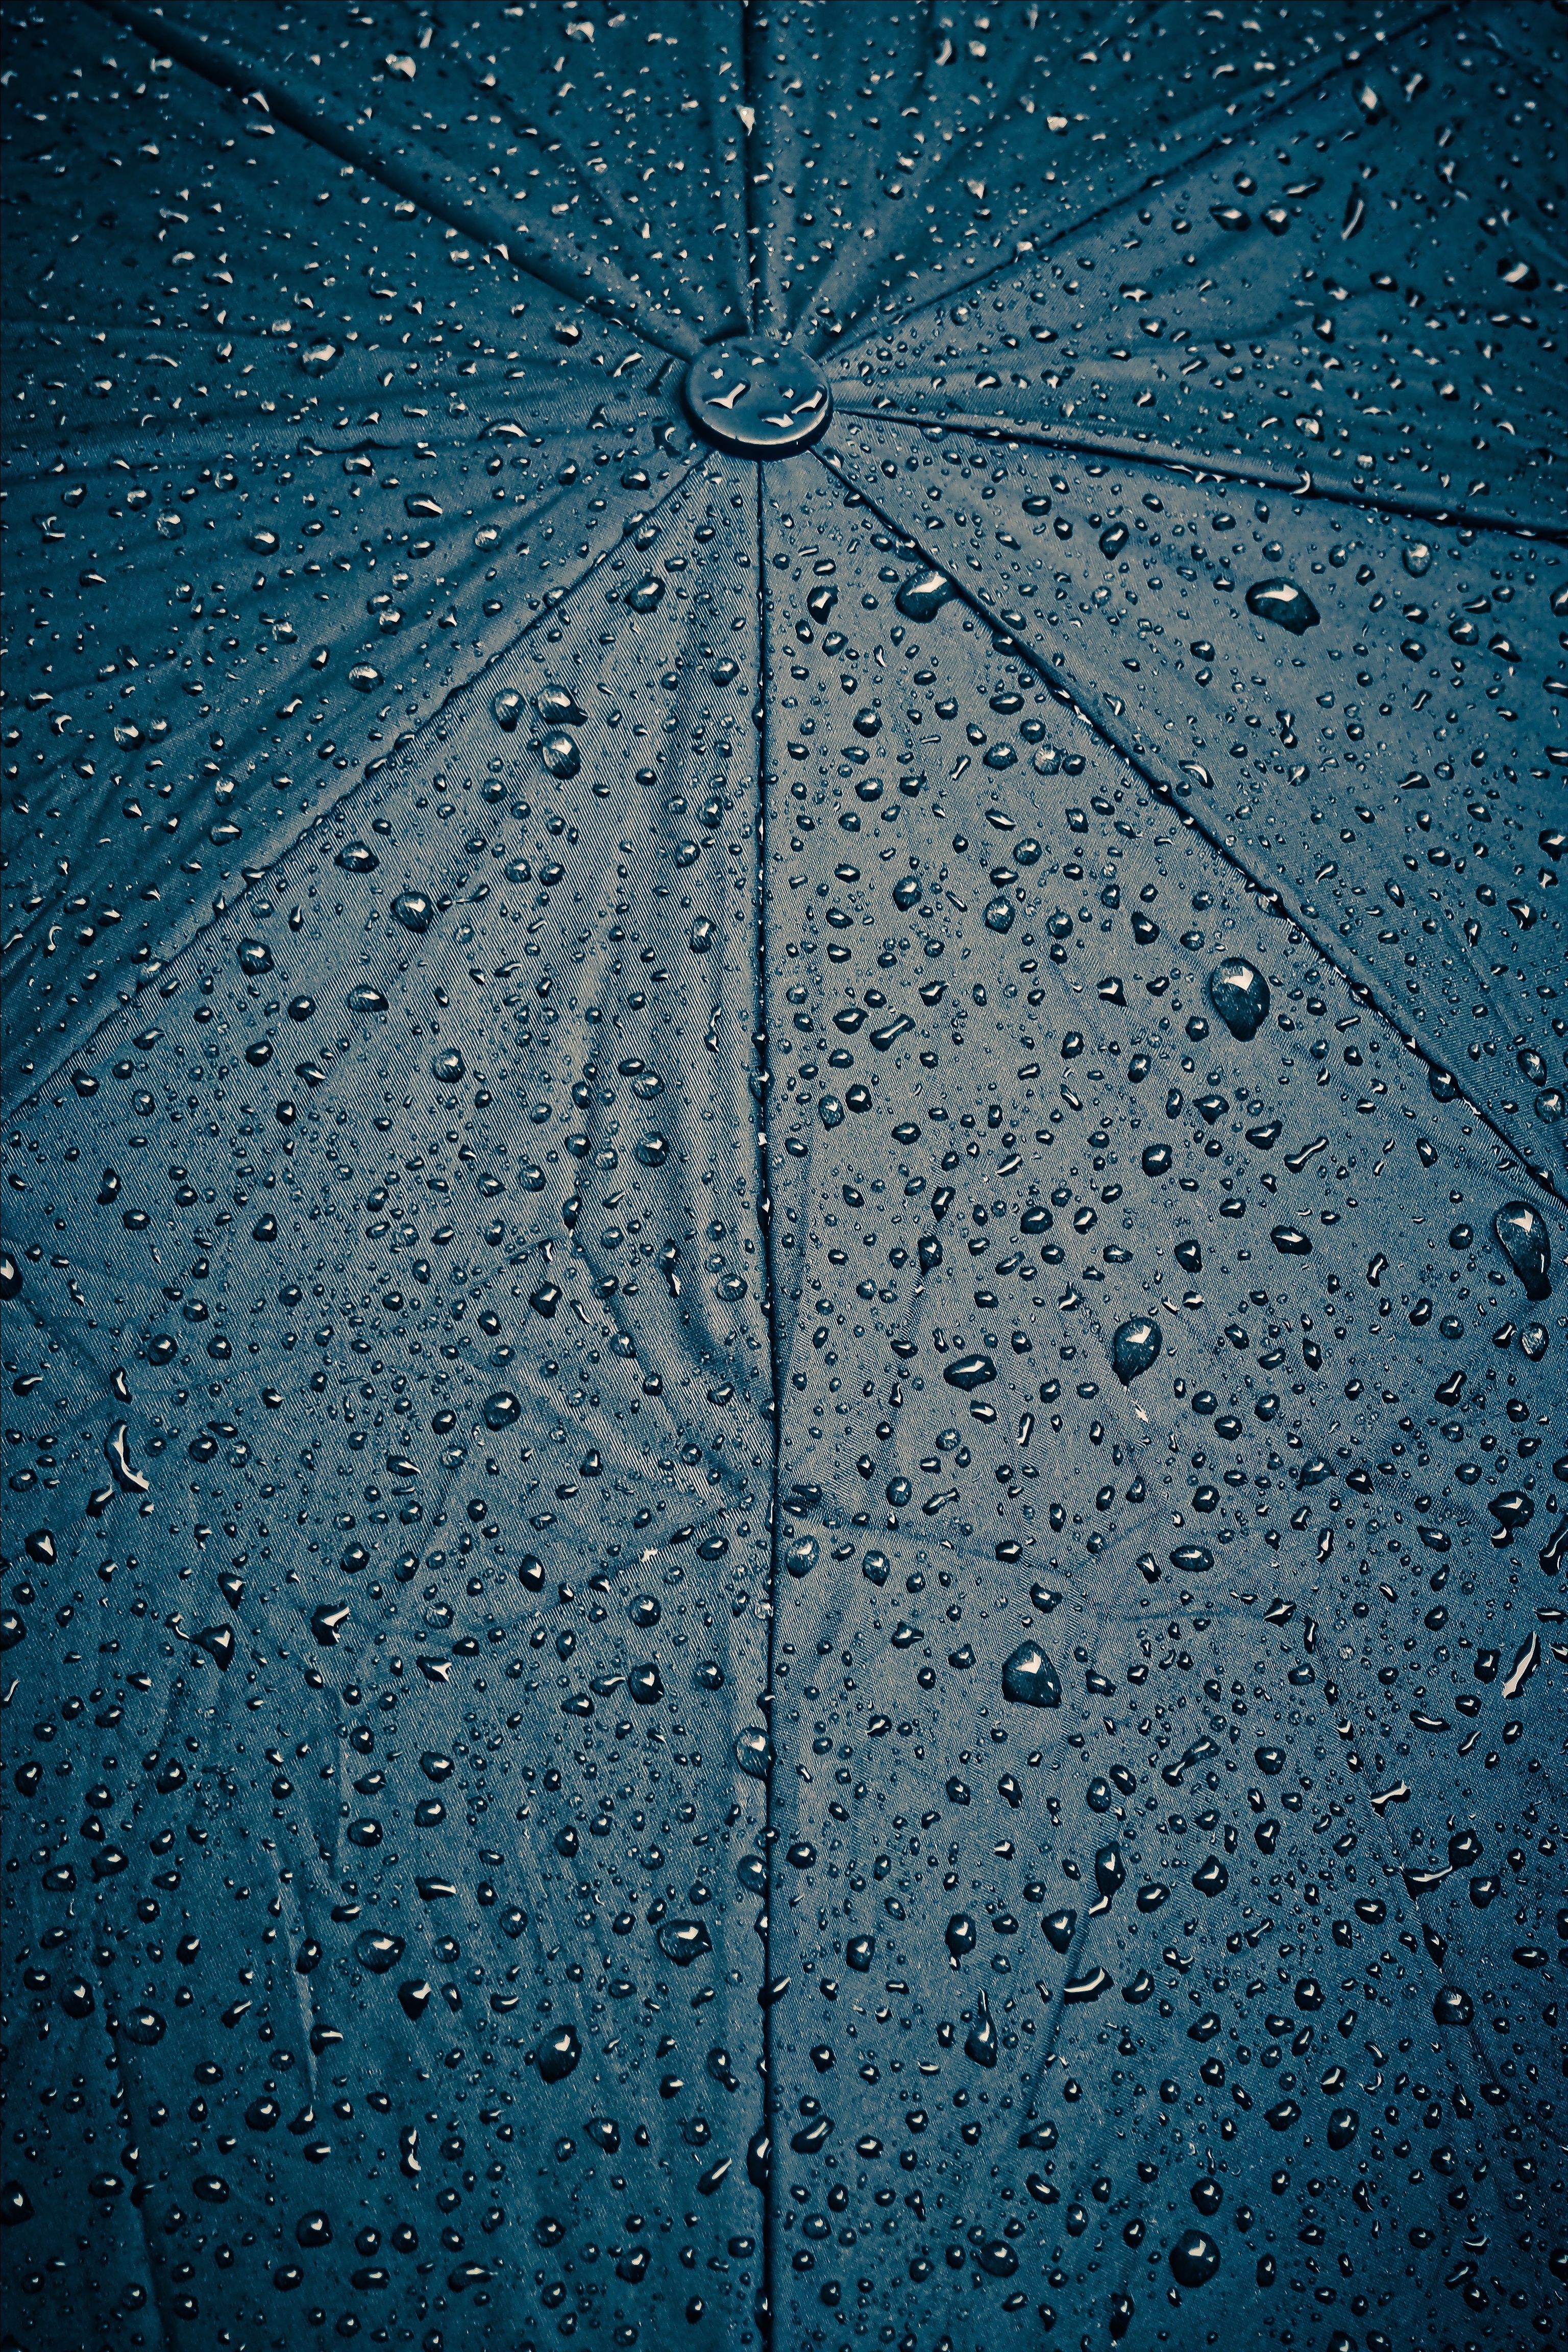 android texture, rain, drops, wet, textures, surface, cloth, umbrella, humid